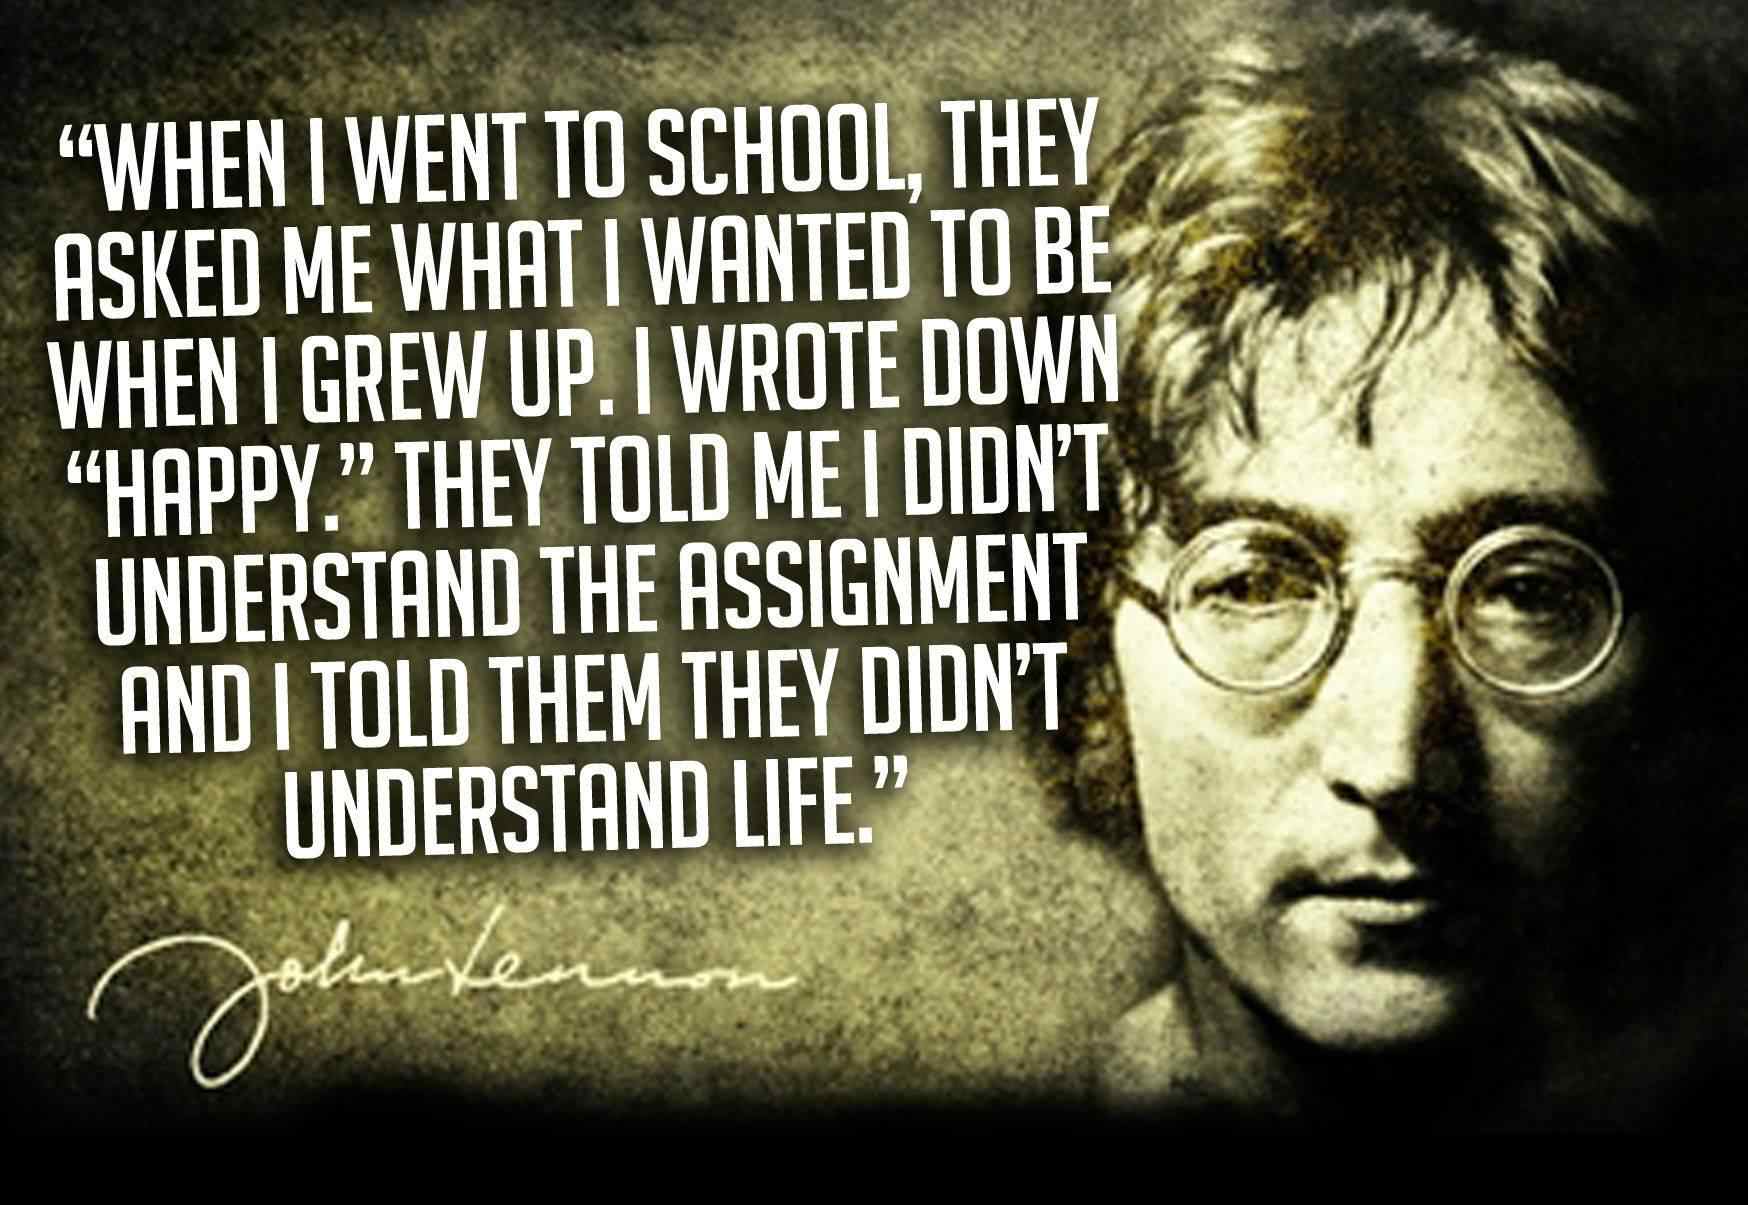 10 Best John Lennon Quotes